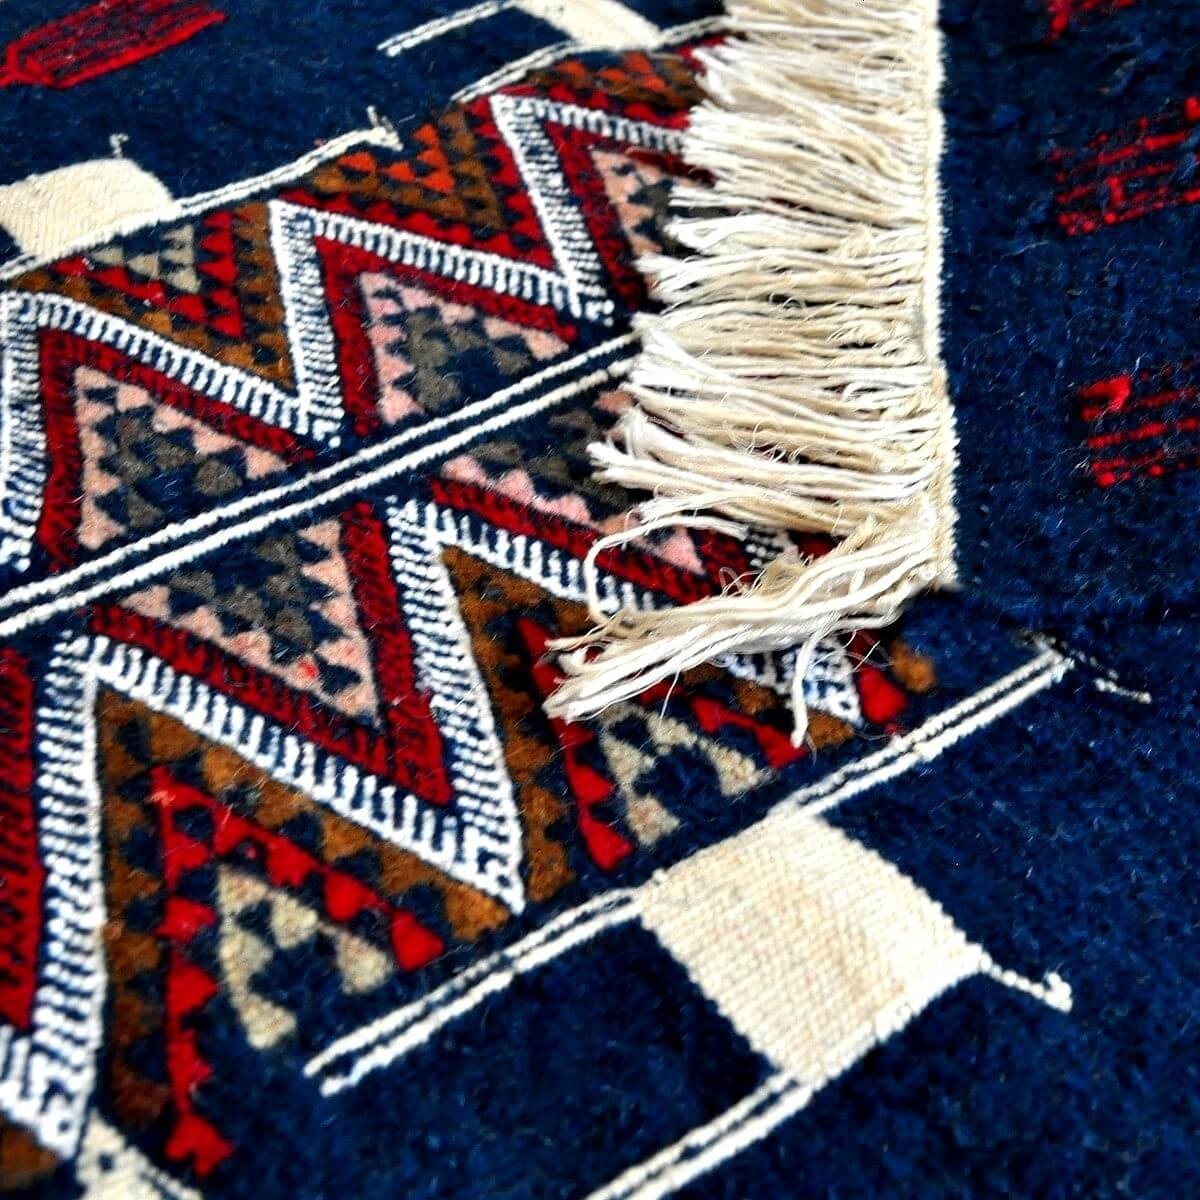 Berber Teppich Teppich Kelim Ichbilia 60x115 Blau/Weiß/Rot (Handgewebt, Wolle) Tunesischer Kelim-Teppich im marokkanischen Stil.